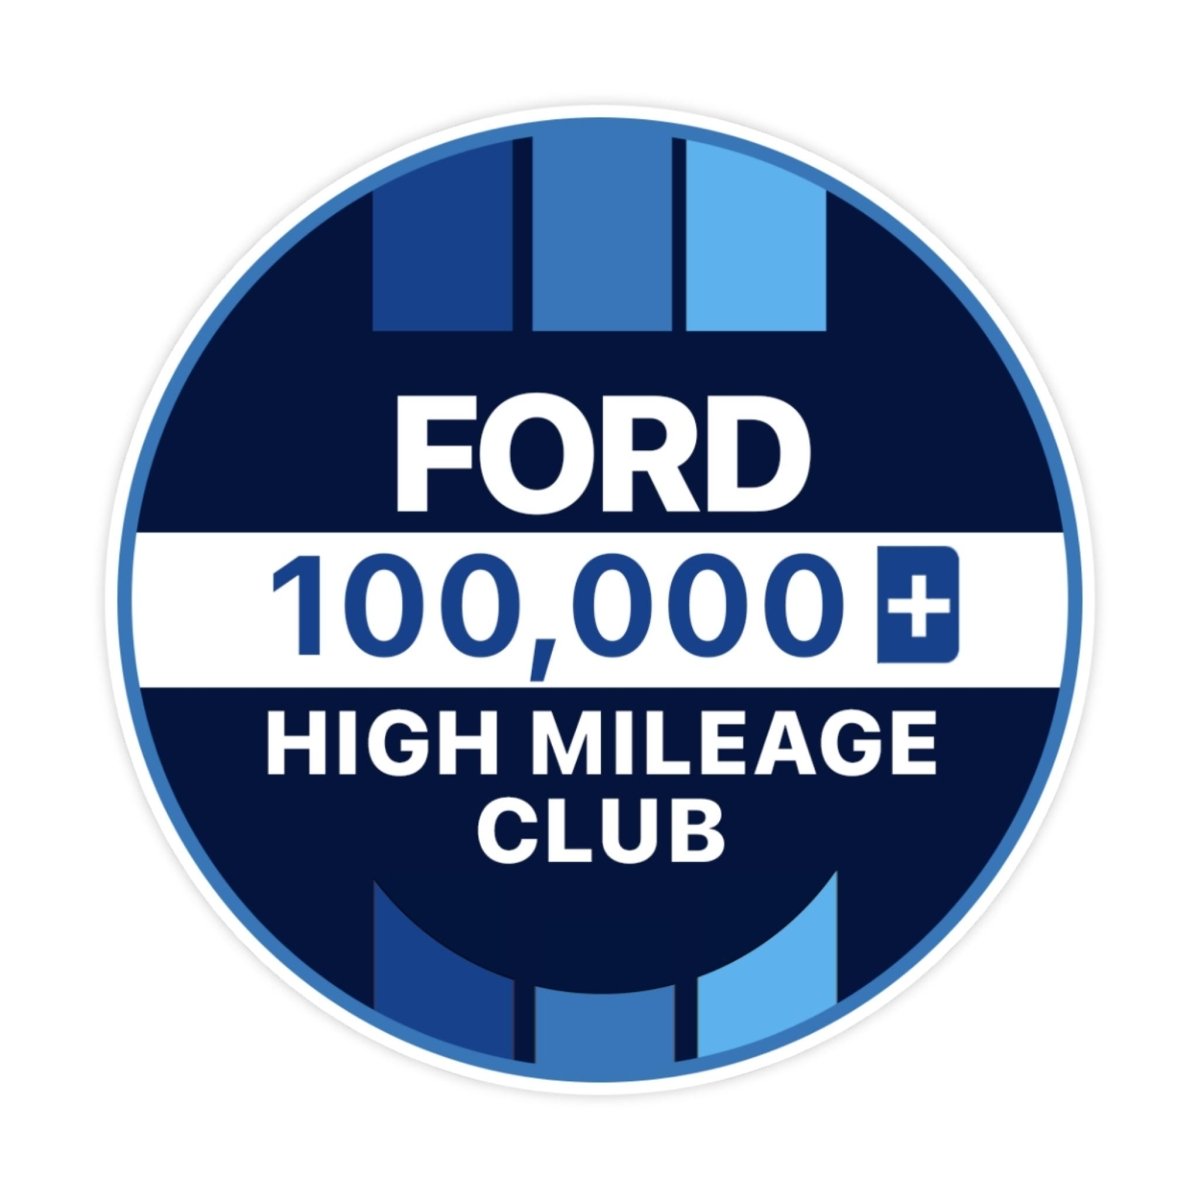 Ford 300k High Mileage Club Sticker - stickerbullFord 300k High Mileage Club StickerRetail StickerstickerbullstickerbullTaylor_Ford100k [#118]100kFord 300k High Mileage Club Sticker